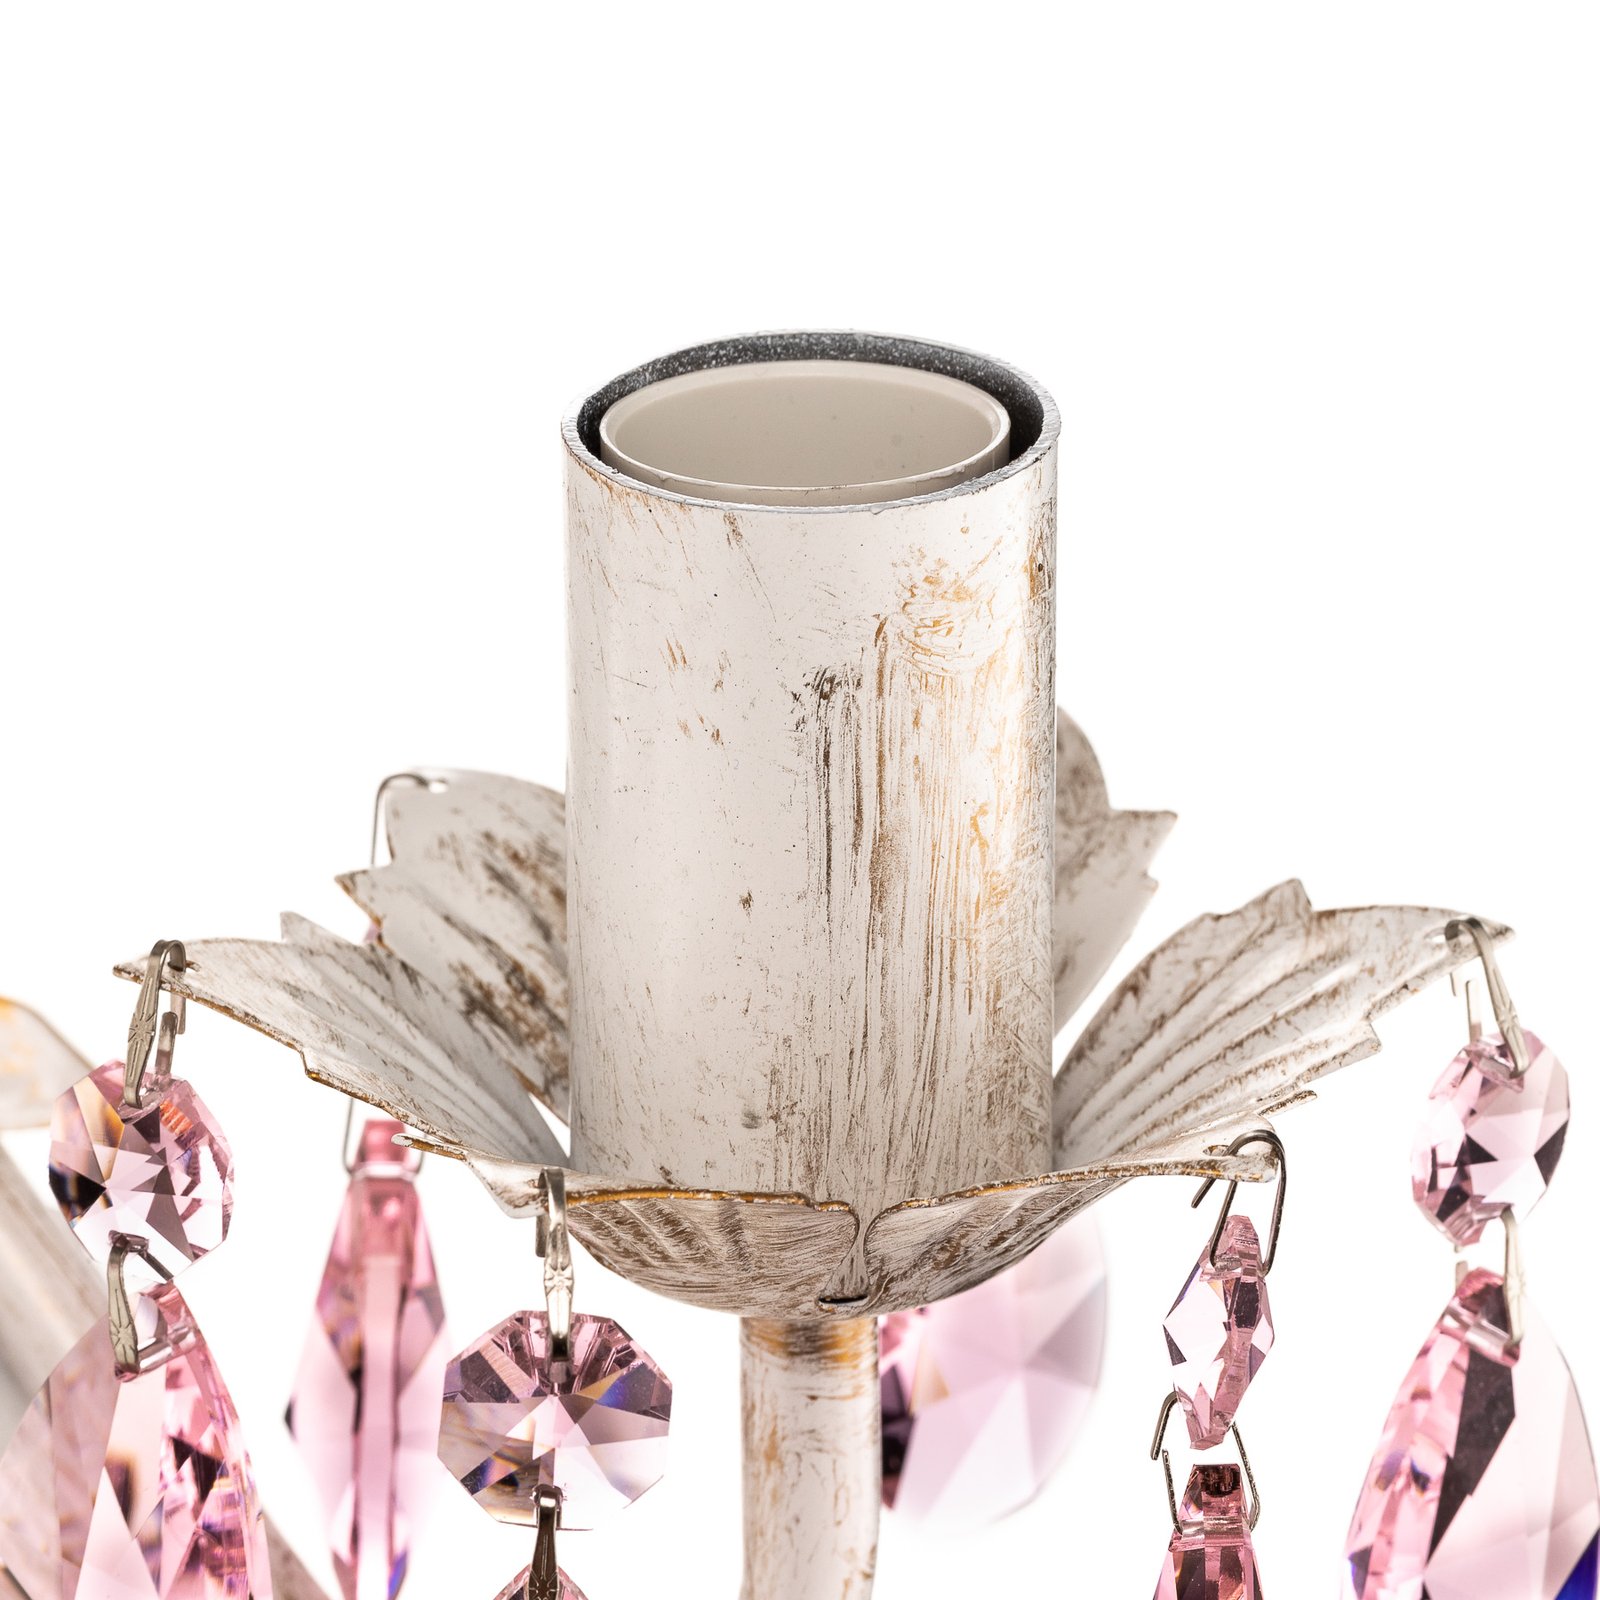 Kate fali lámpa két izzós, fehér, rozé kristályok